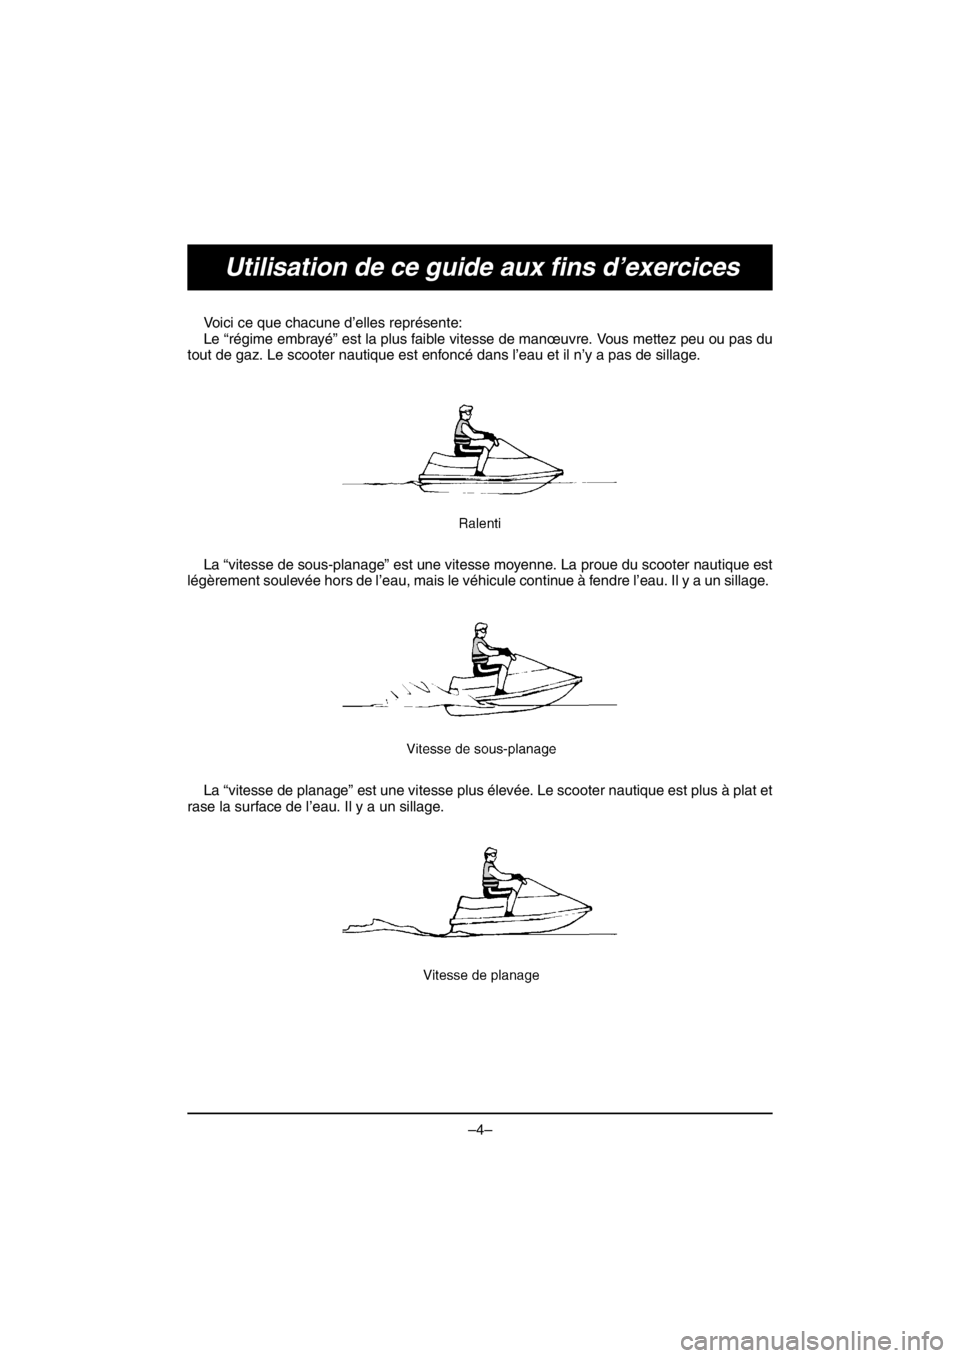 YAMAHA V1 SPORT 2016  Owners Manual –4–
Utilisation de ce guide aux fins d’exercices
Voici ce que chacune d’elles représente: 
Le “régime embrayé” est la plus faible vitesse de manœuvre. Vous mettez peu ou pas du
tout de